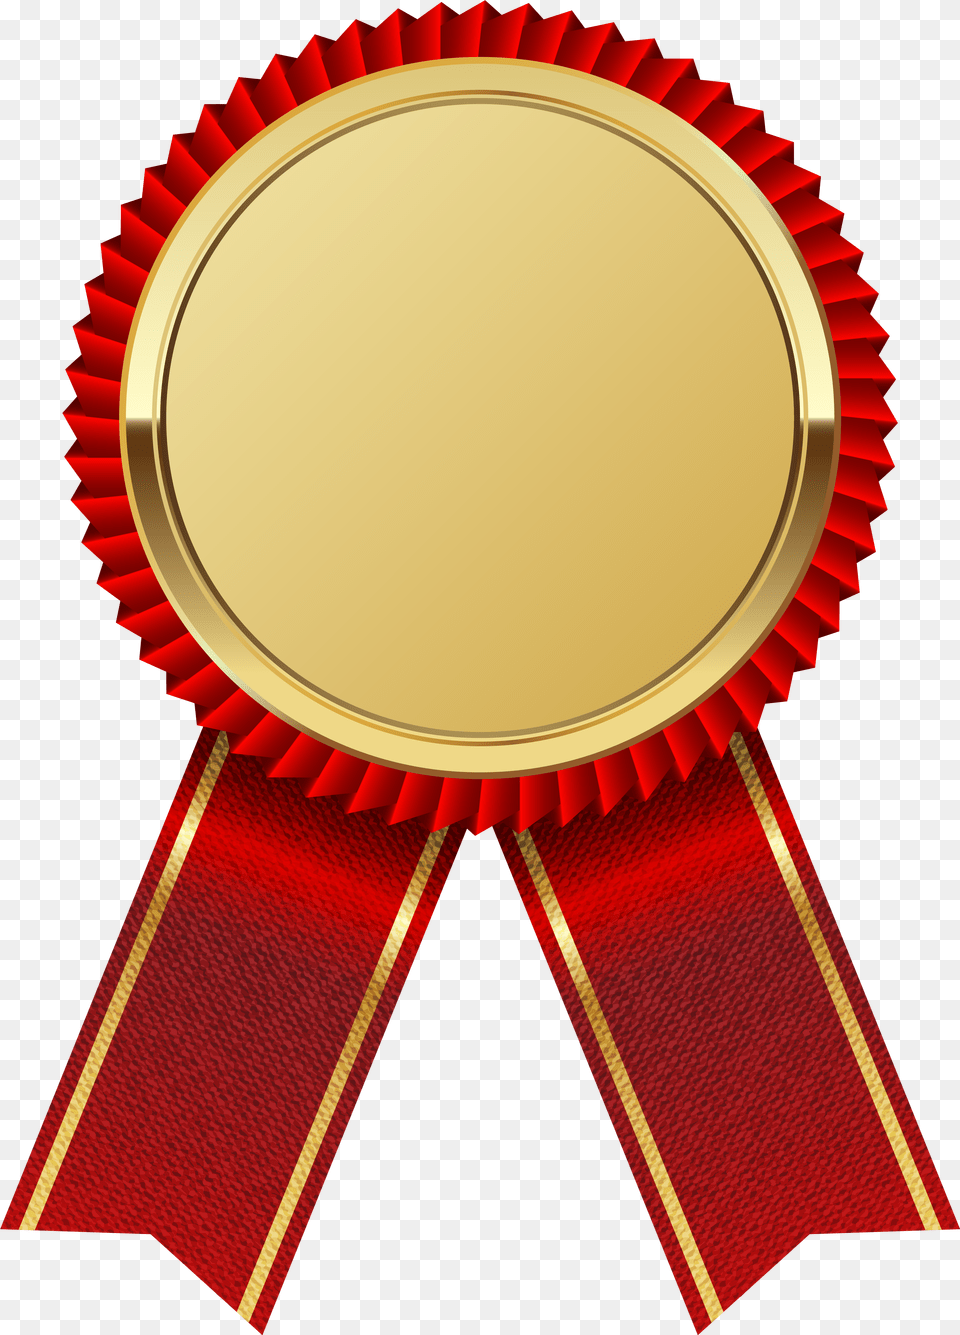 Medal Gold Ribbon Red Image, Gold Medal, Trophy, Logo, Badge Png